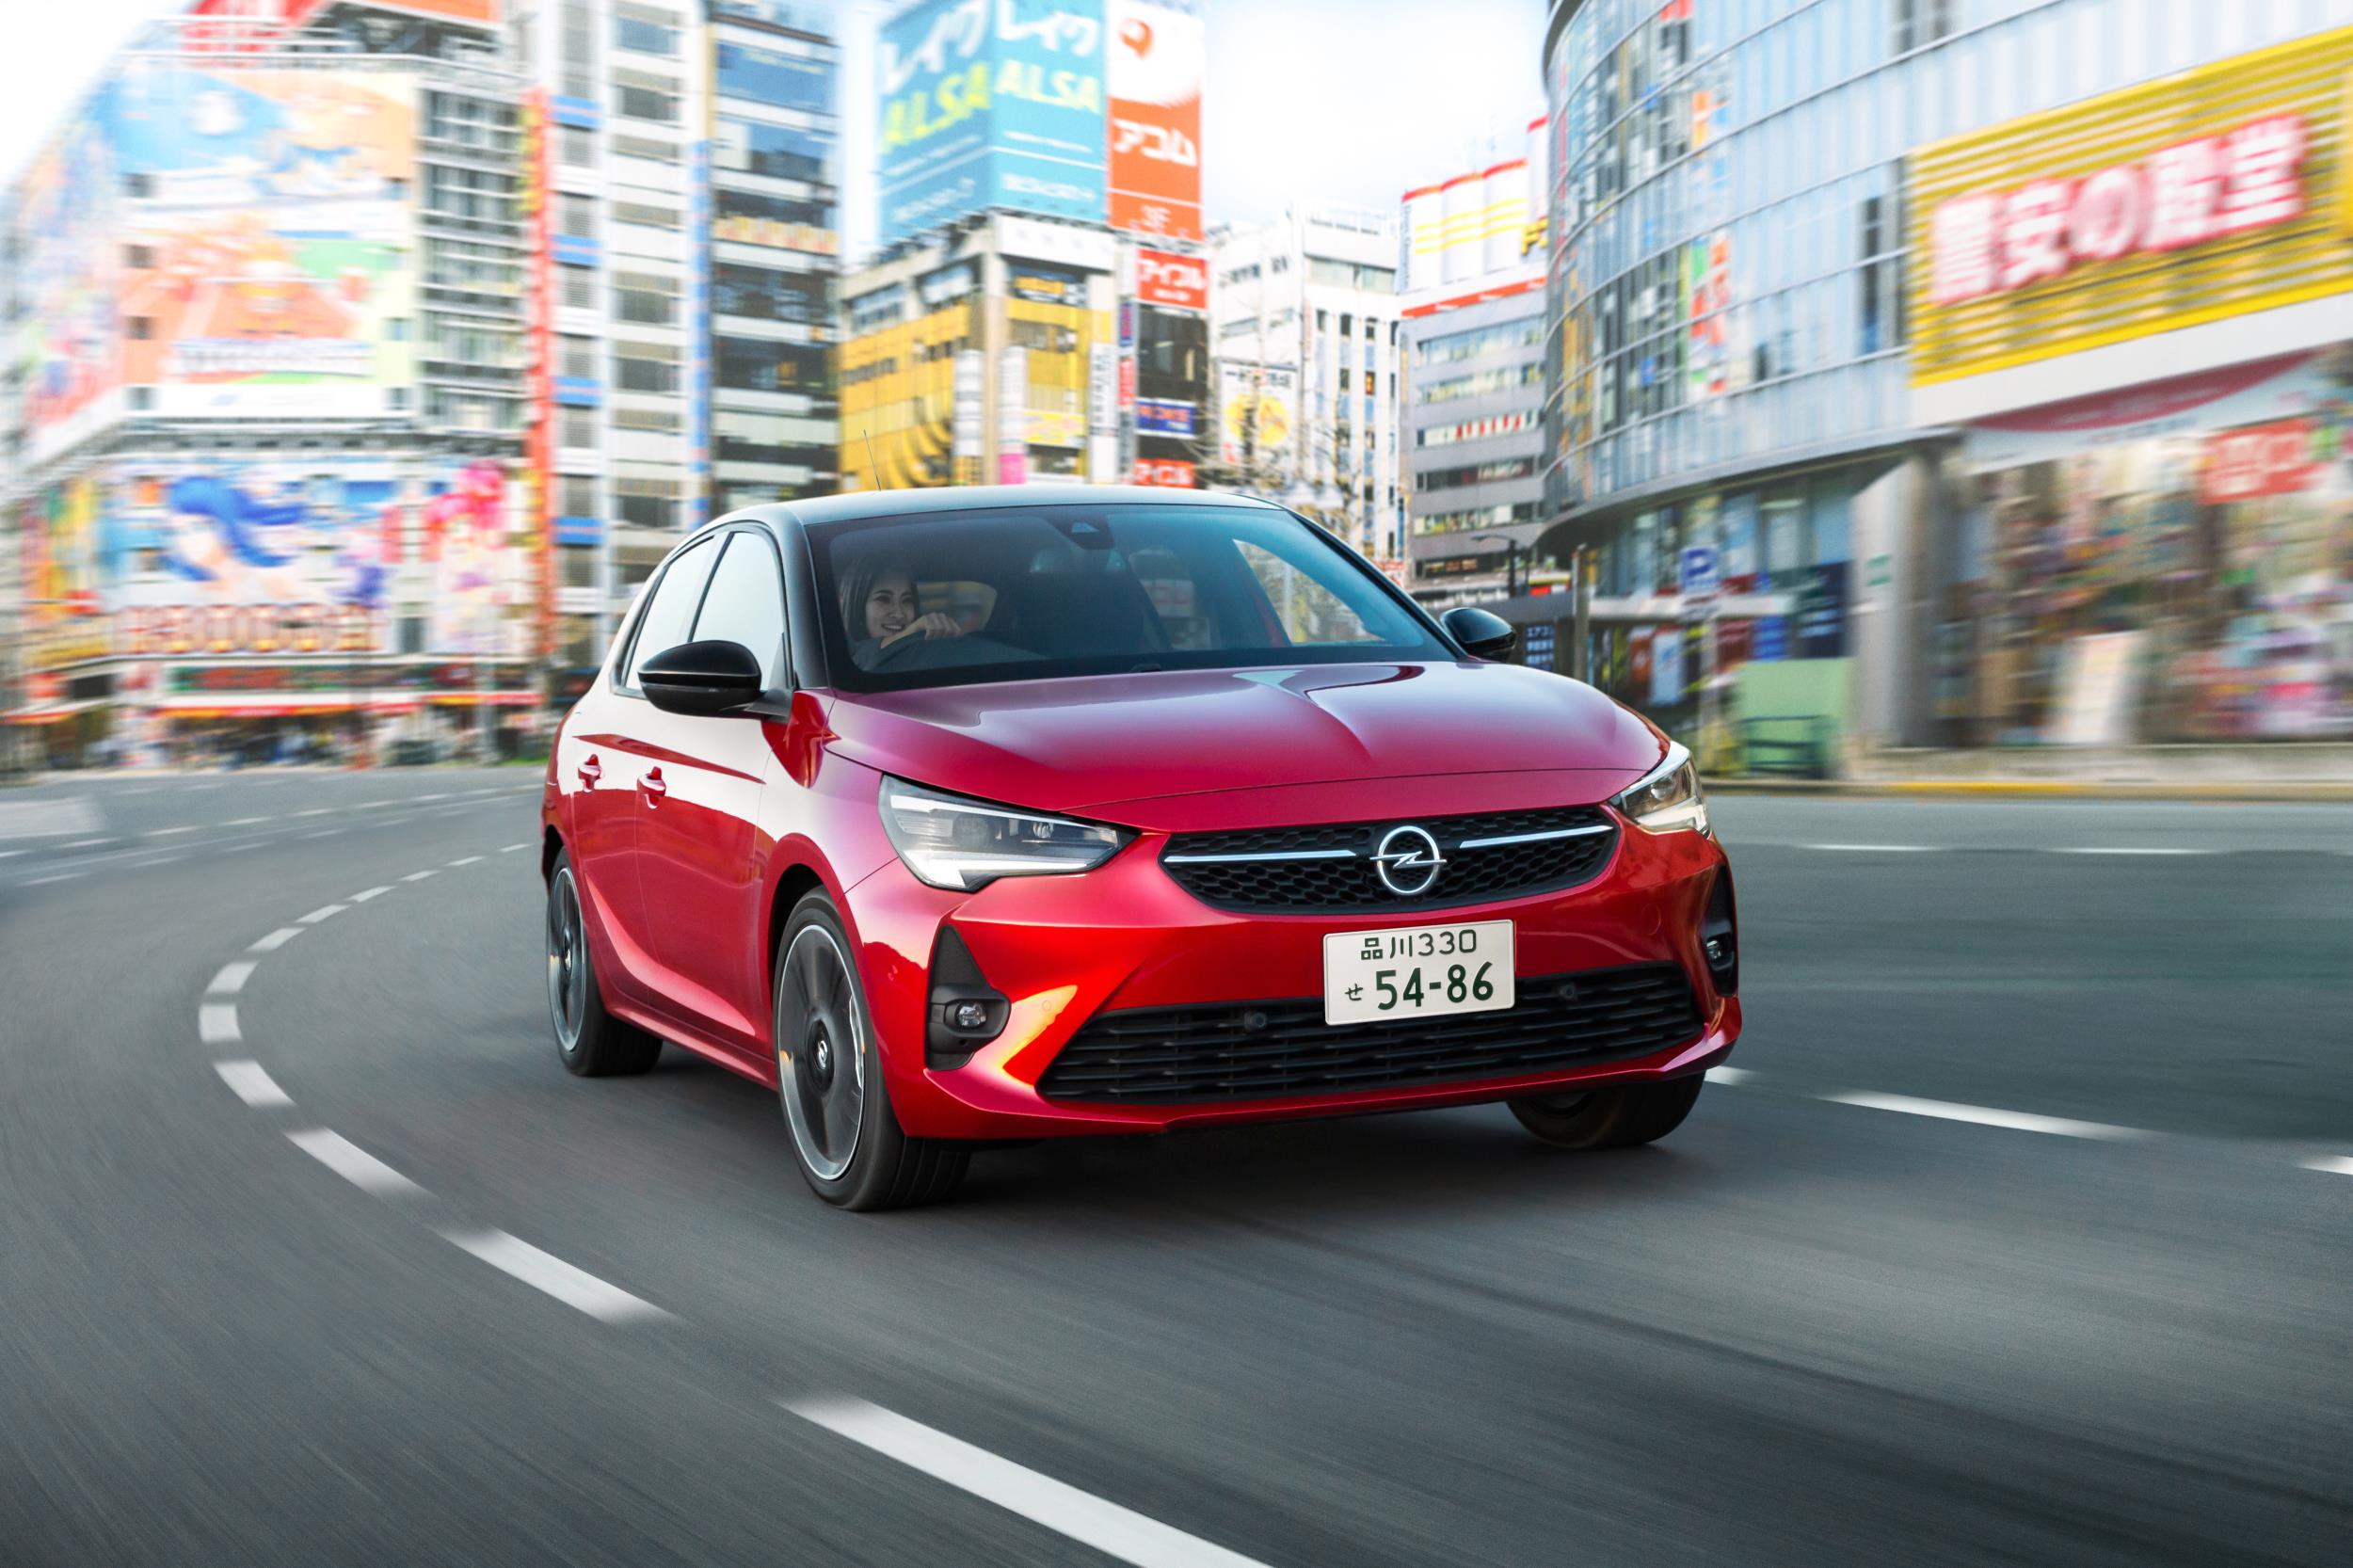 Un Opel Corsa rojo circulando por una calle de Japón